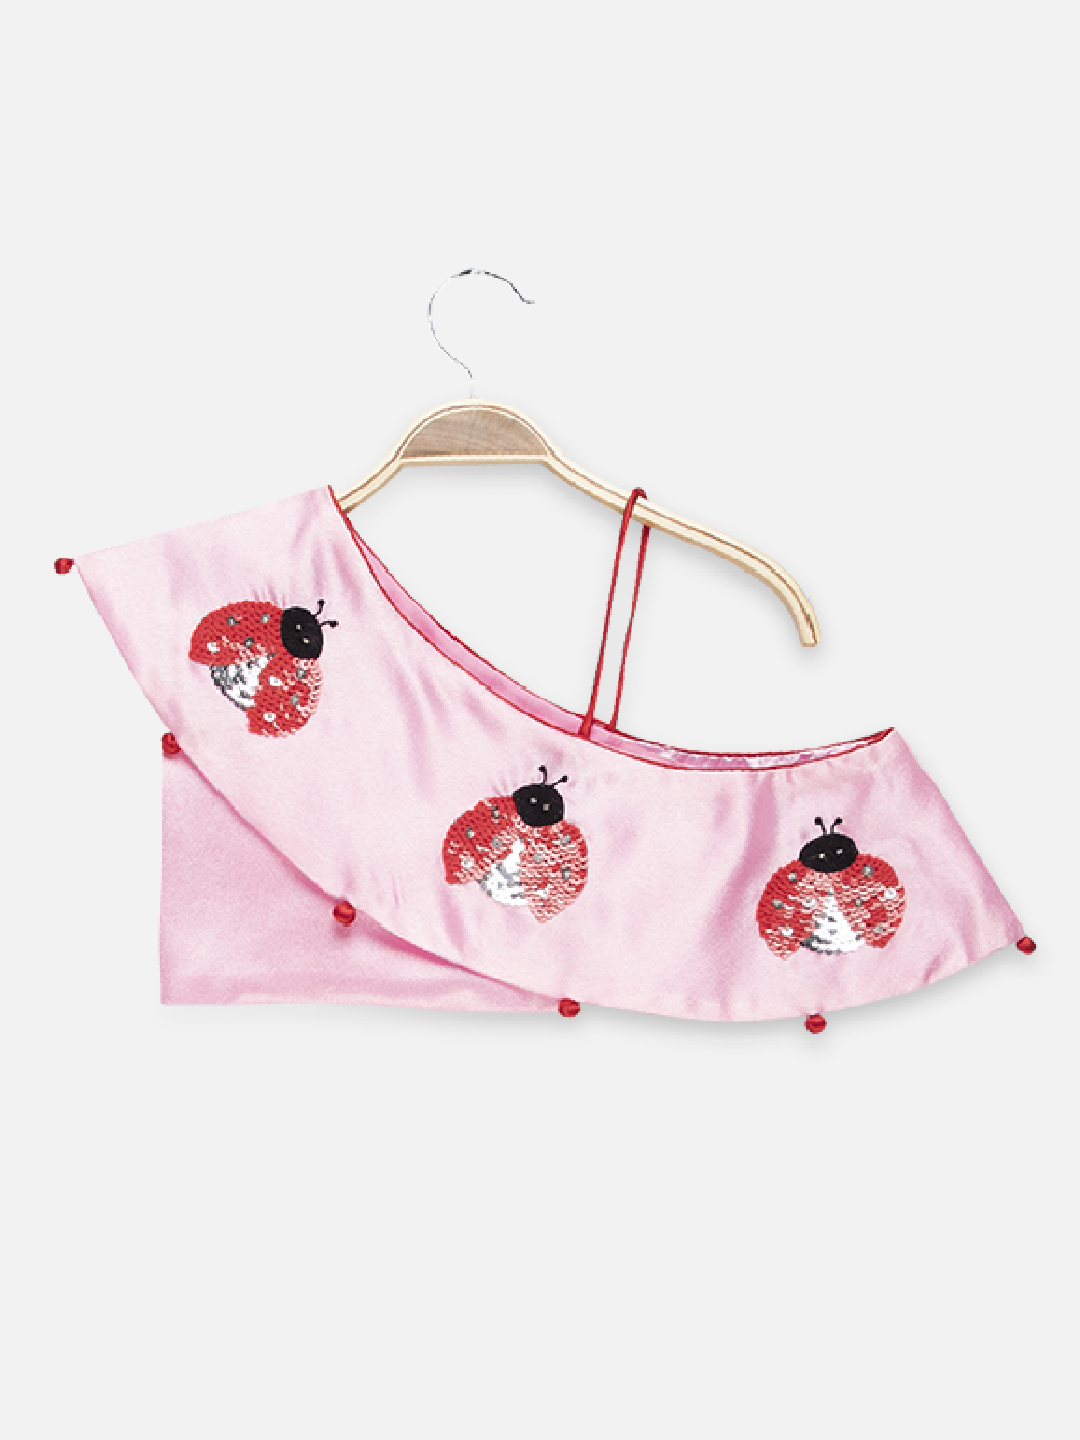 2 5 Ladybird Skirt top